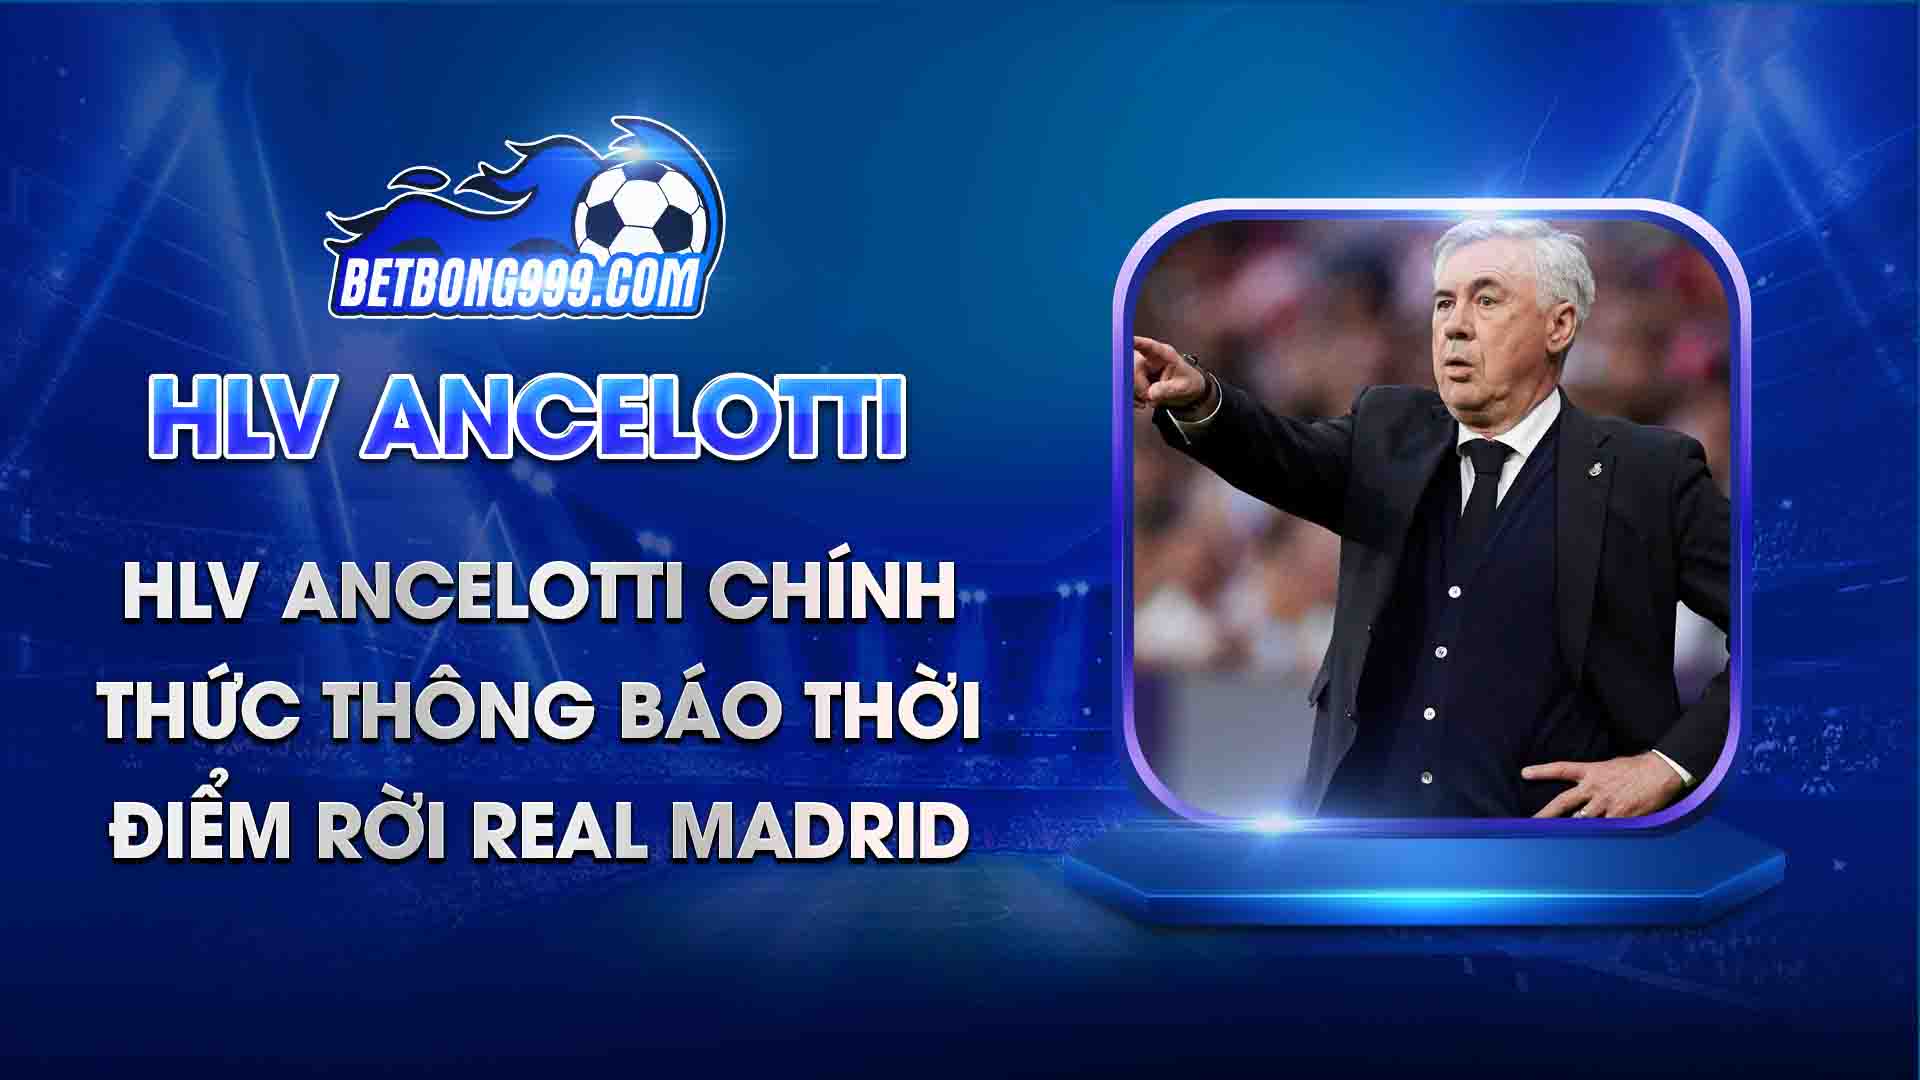 HLV Ancelotti chính thức thông báo thời điểm rời Real Madrid